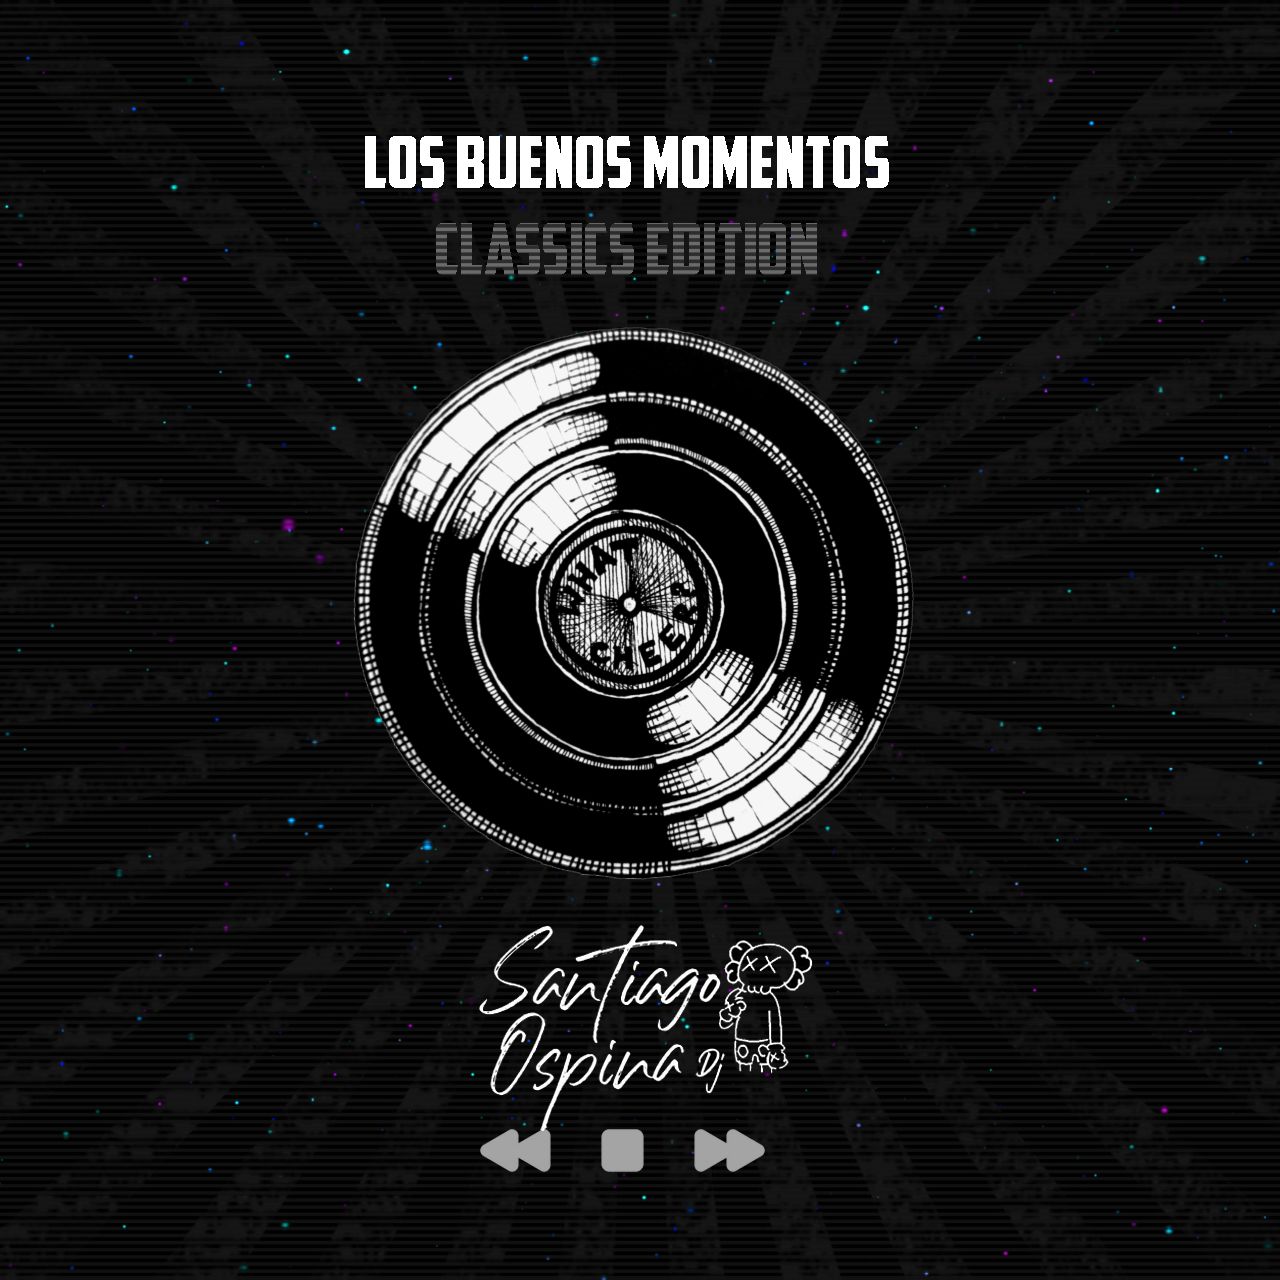 ဒေါင်းလုပ် LOS BUENOS MOMENTOS - SANTIAGO OSPINA DJ